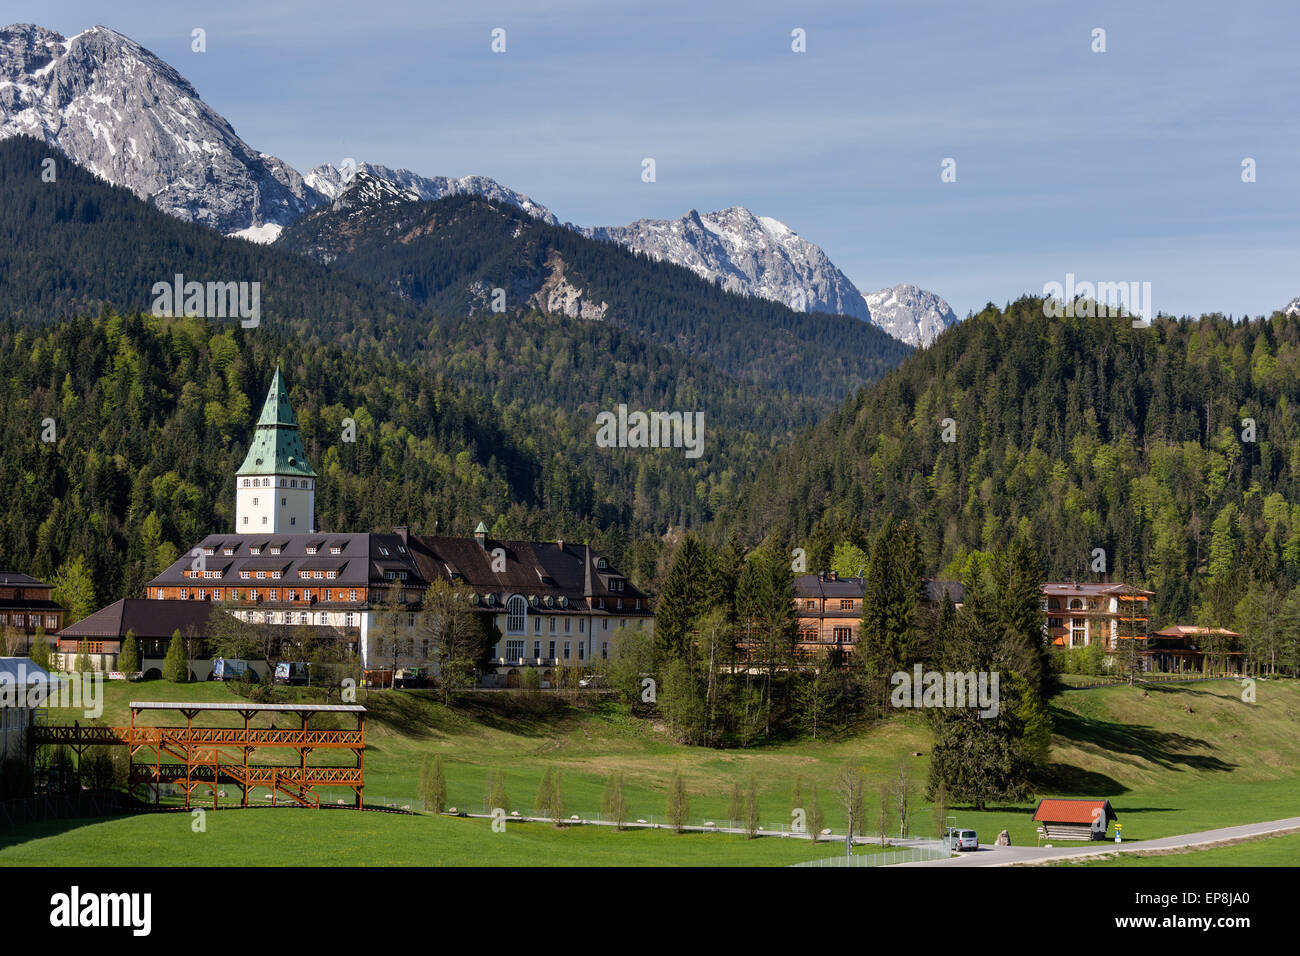 Schloss Elmau Castle Hotel, sede de la cumbre del G7 en 2015, se sitúan en el centro de prensa de la izquierda, Klais Foto de stock